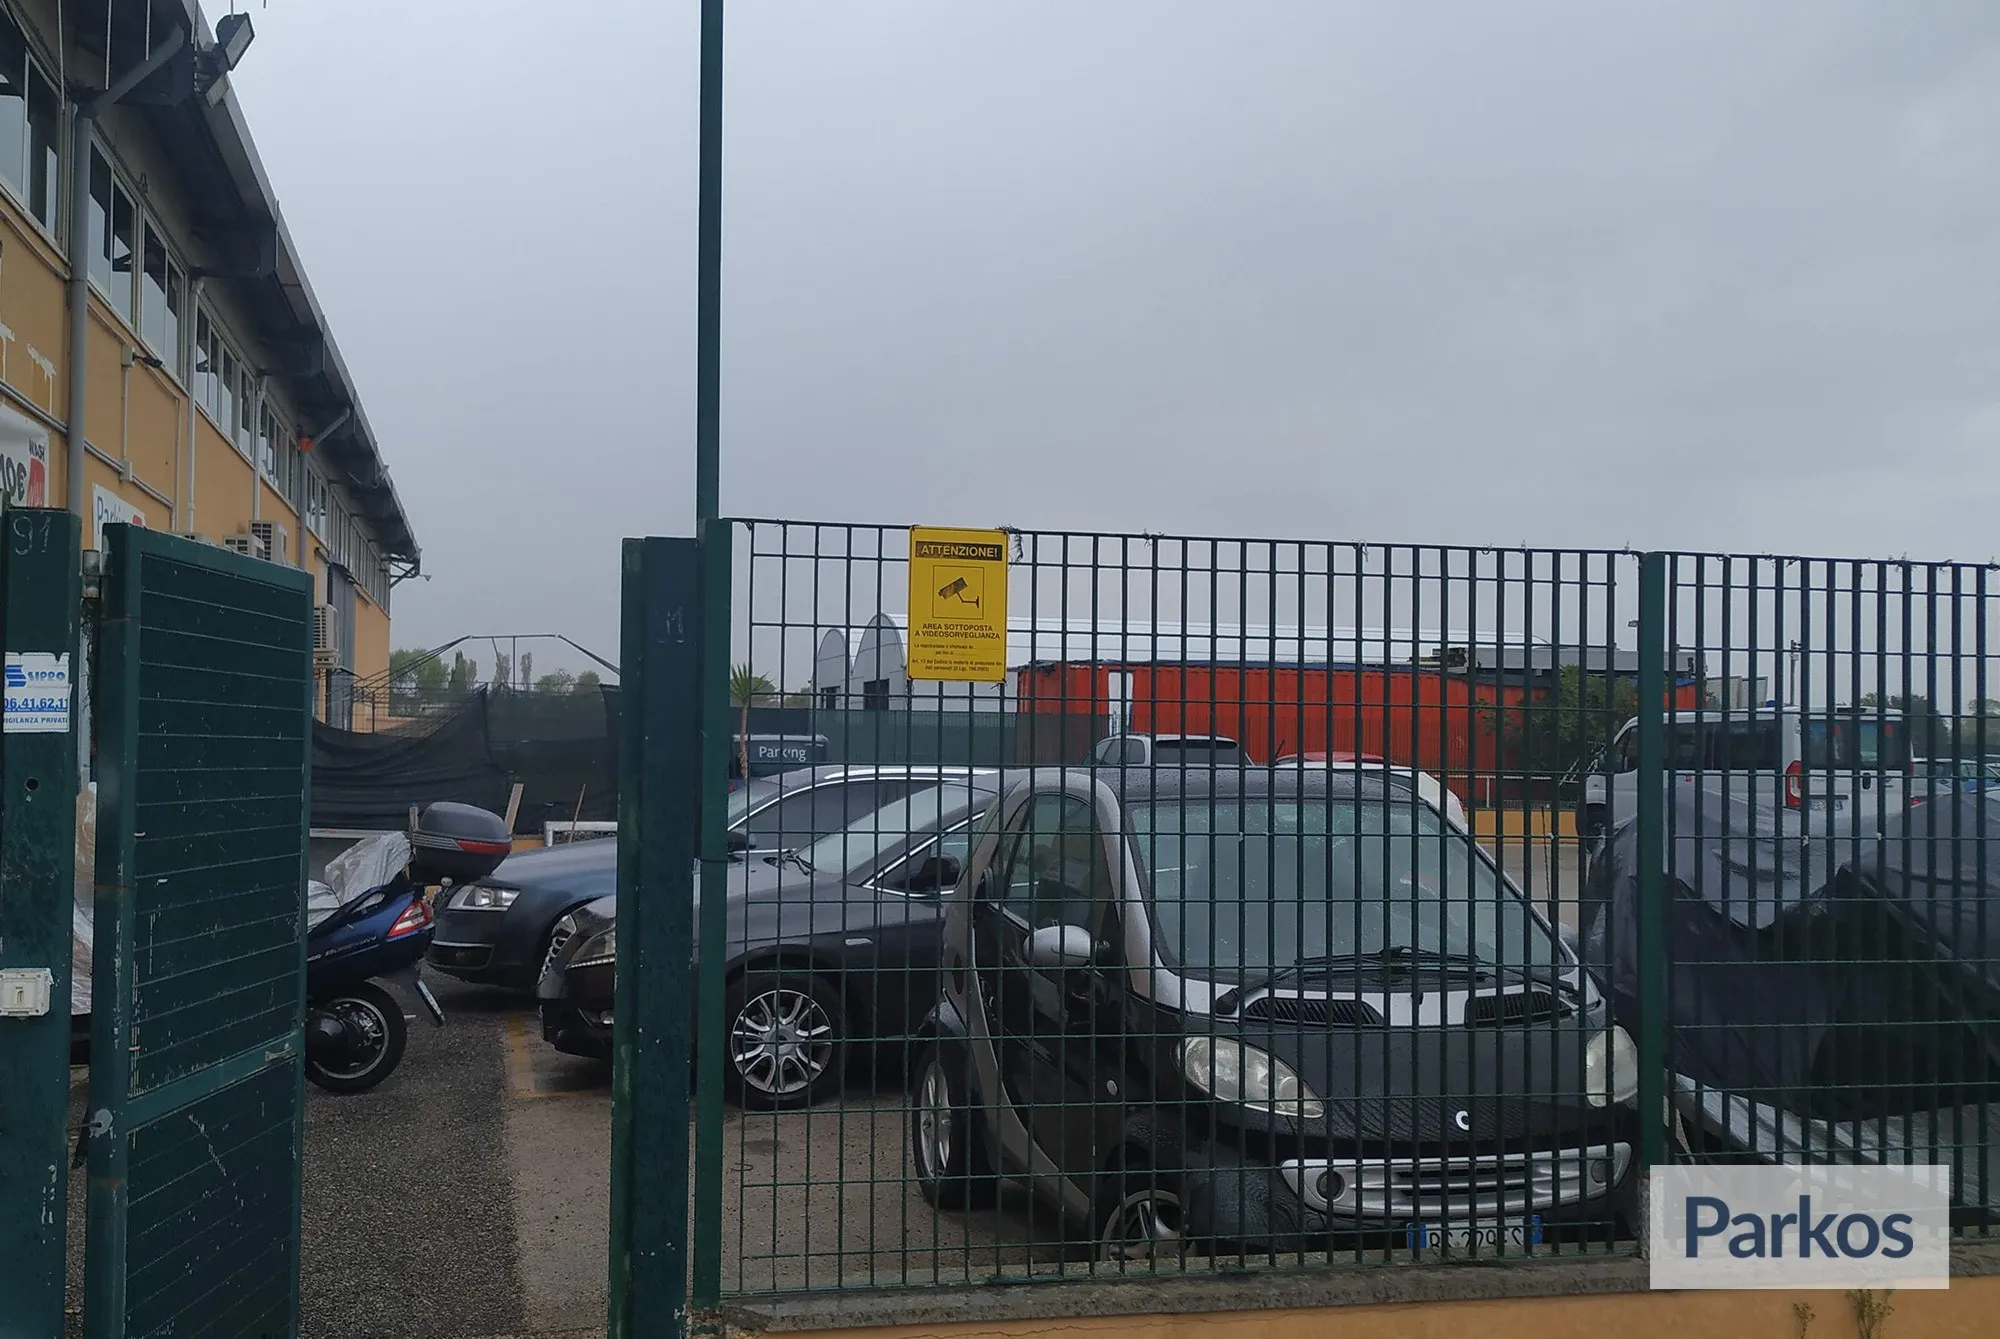 ParkingWay (Paga in parcheggio) - Parcheggio Fiumicino - picture 1